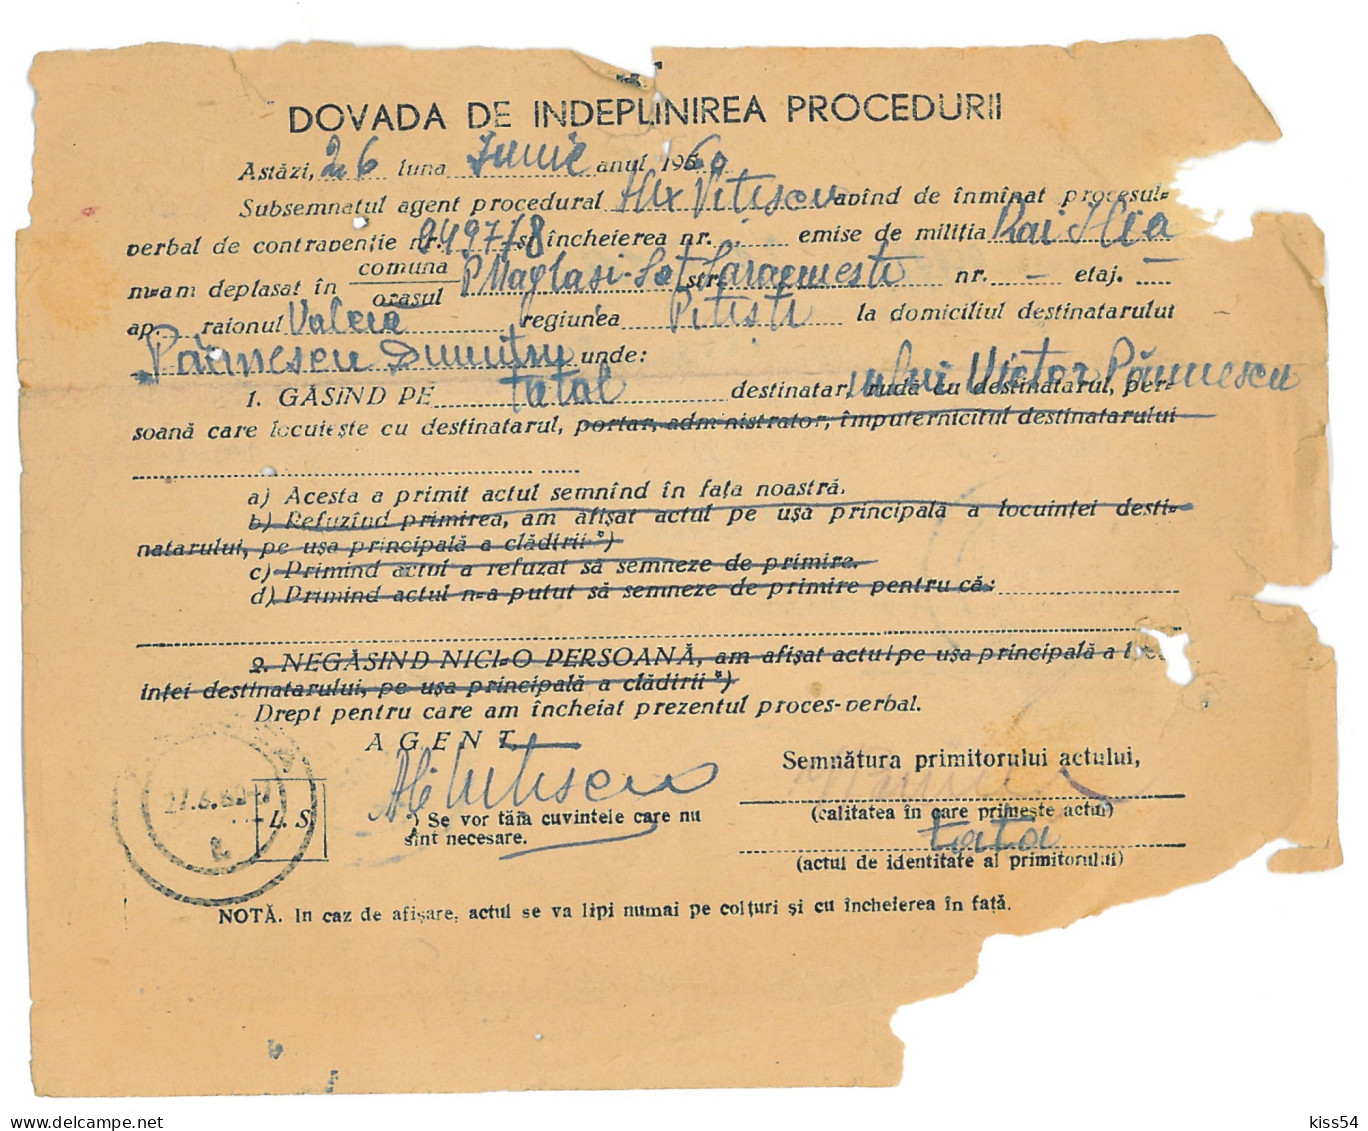 CIP 22 - 23-a ILIA, Hunedoara, Acte De Procedura - Cover Receipt - Used - 1960 - Briefe U. Dokumente